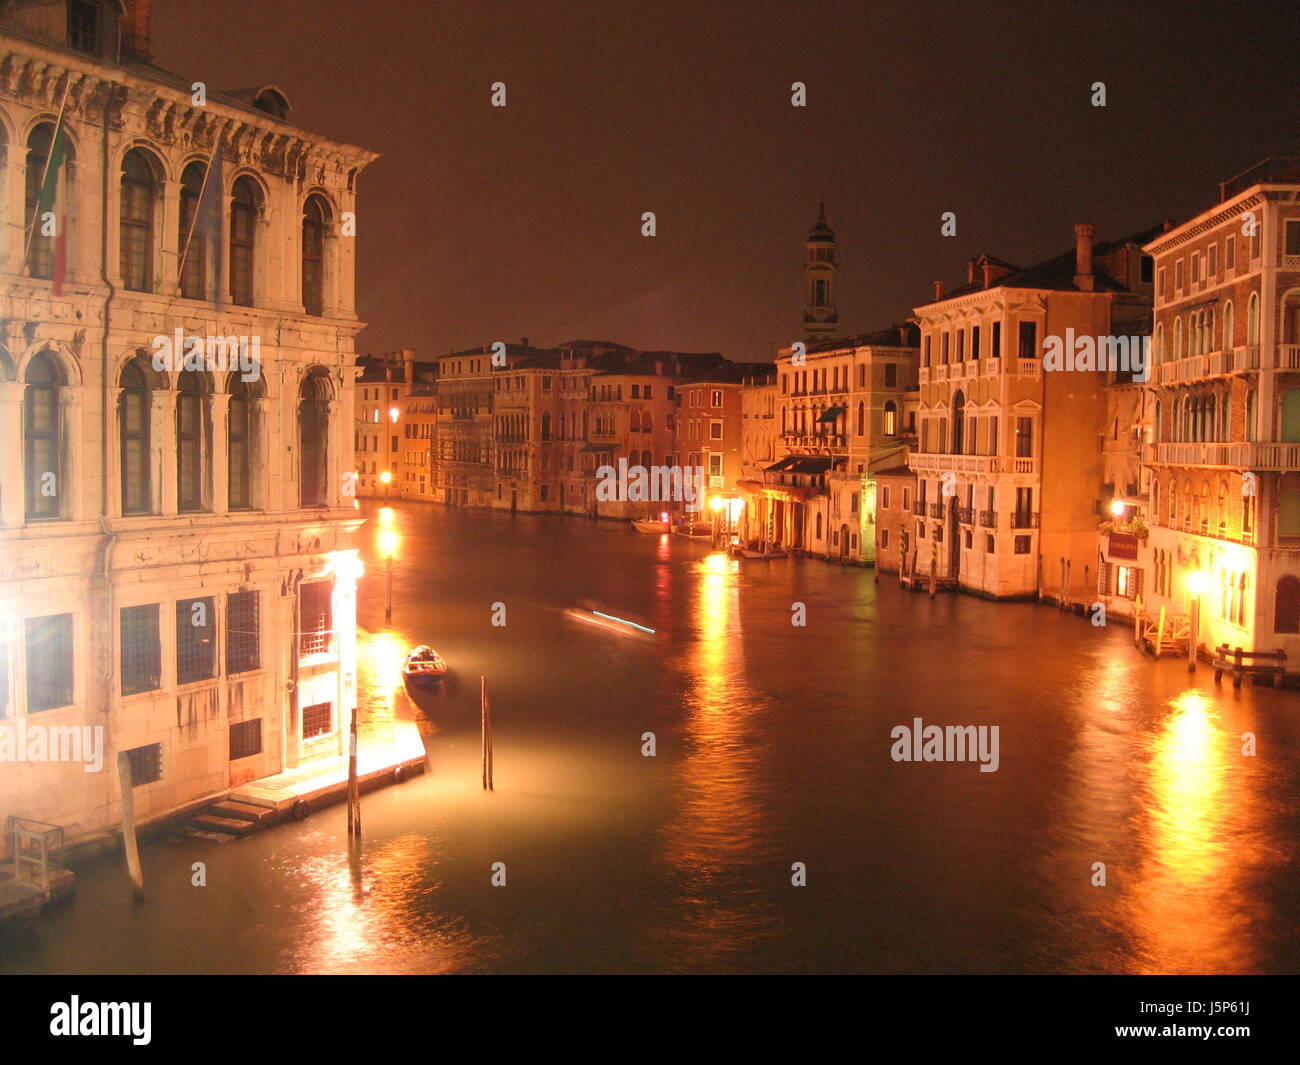 Night nächtliche Venedig Abend Kanal Fortschreiten Kanu Fluss Wasser dunkel Stockfoto